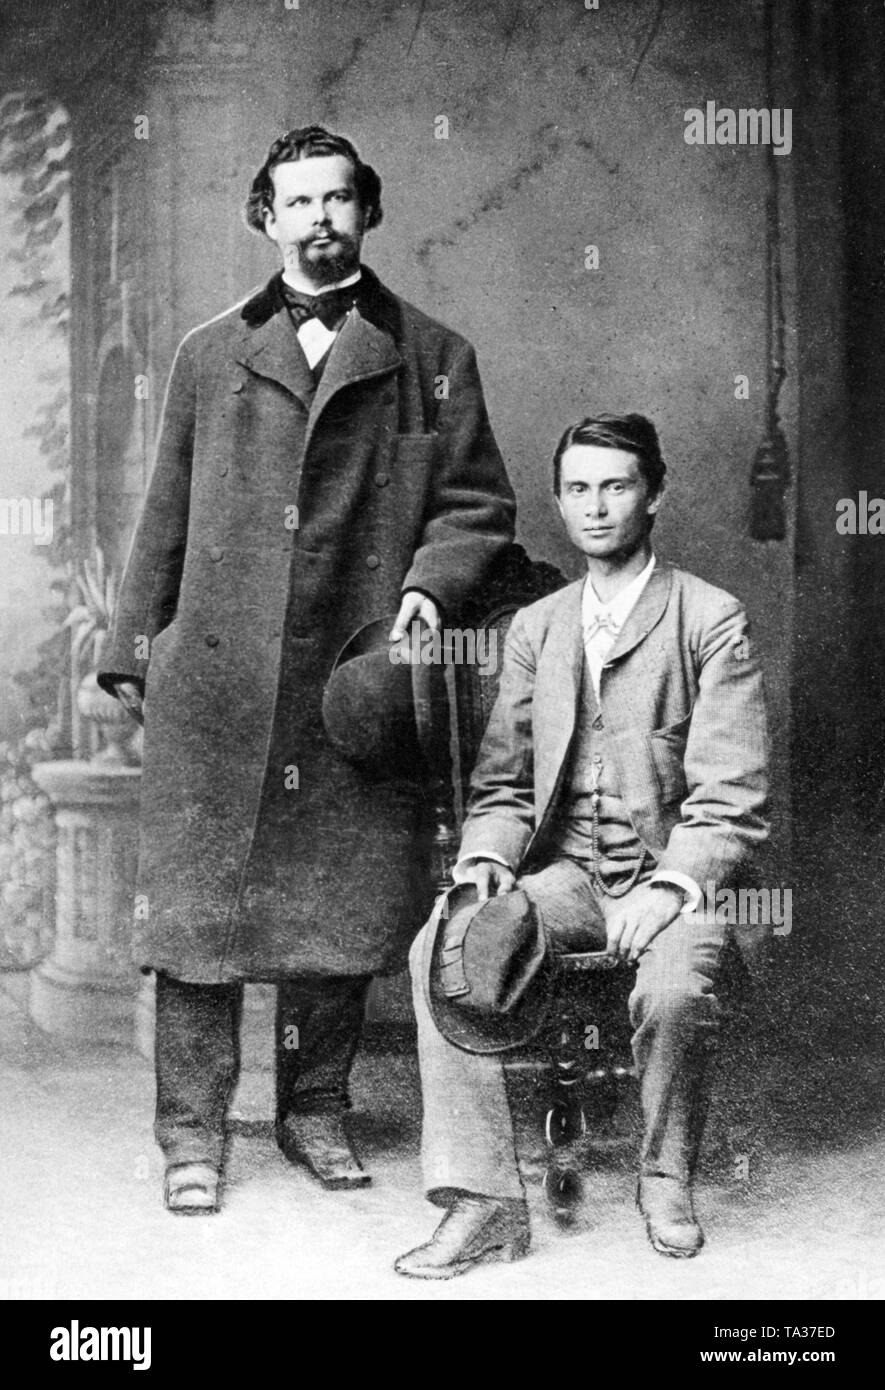 Der bayerische König Ludwig II. mit dem Schauspieler Josef Kainz während  einer Reise durch die Schweiz Stockfotografie - Alamy